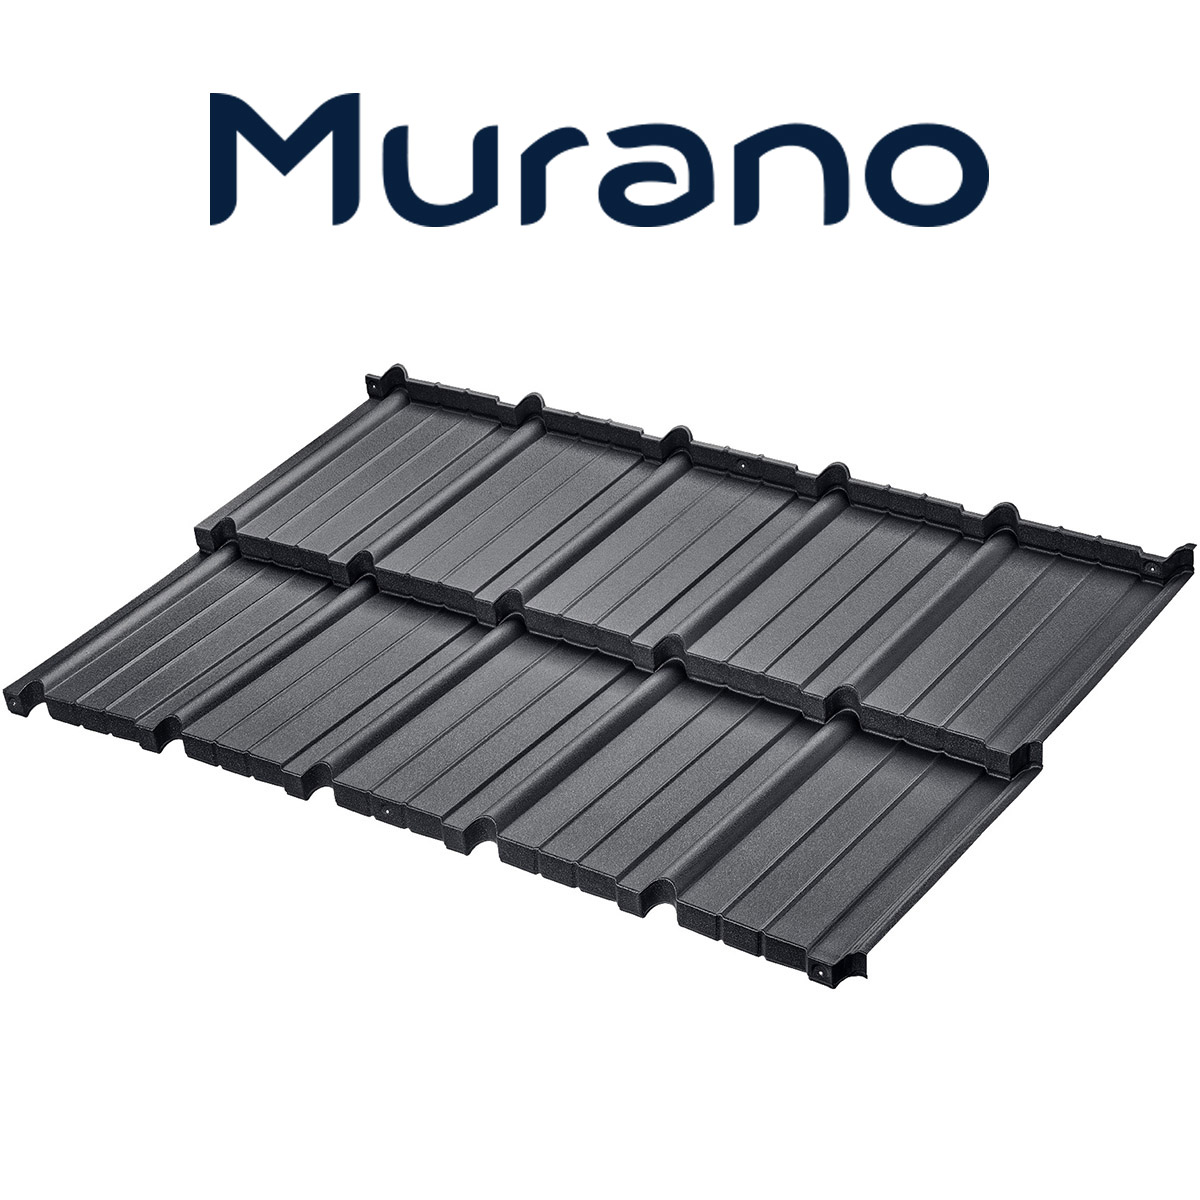 Țiglă metalică Murano pentru acoperișuri